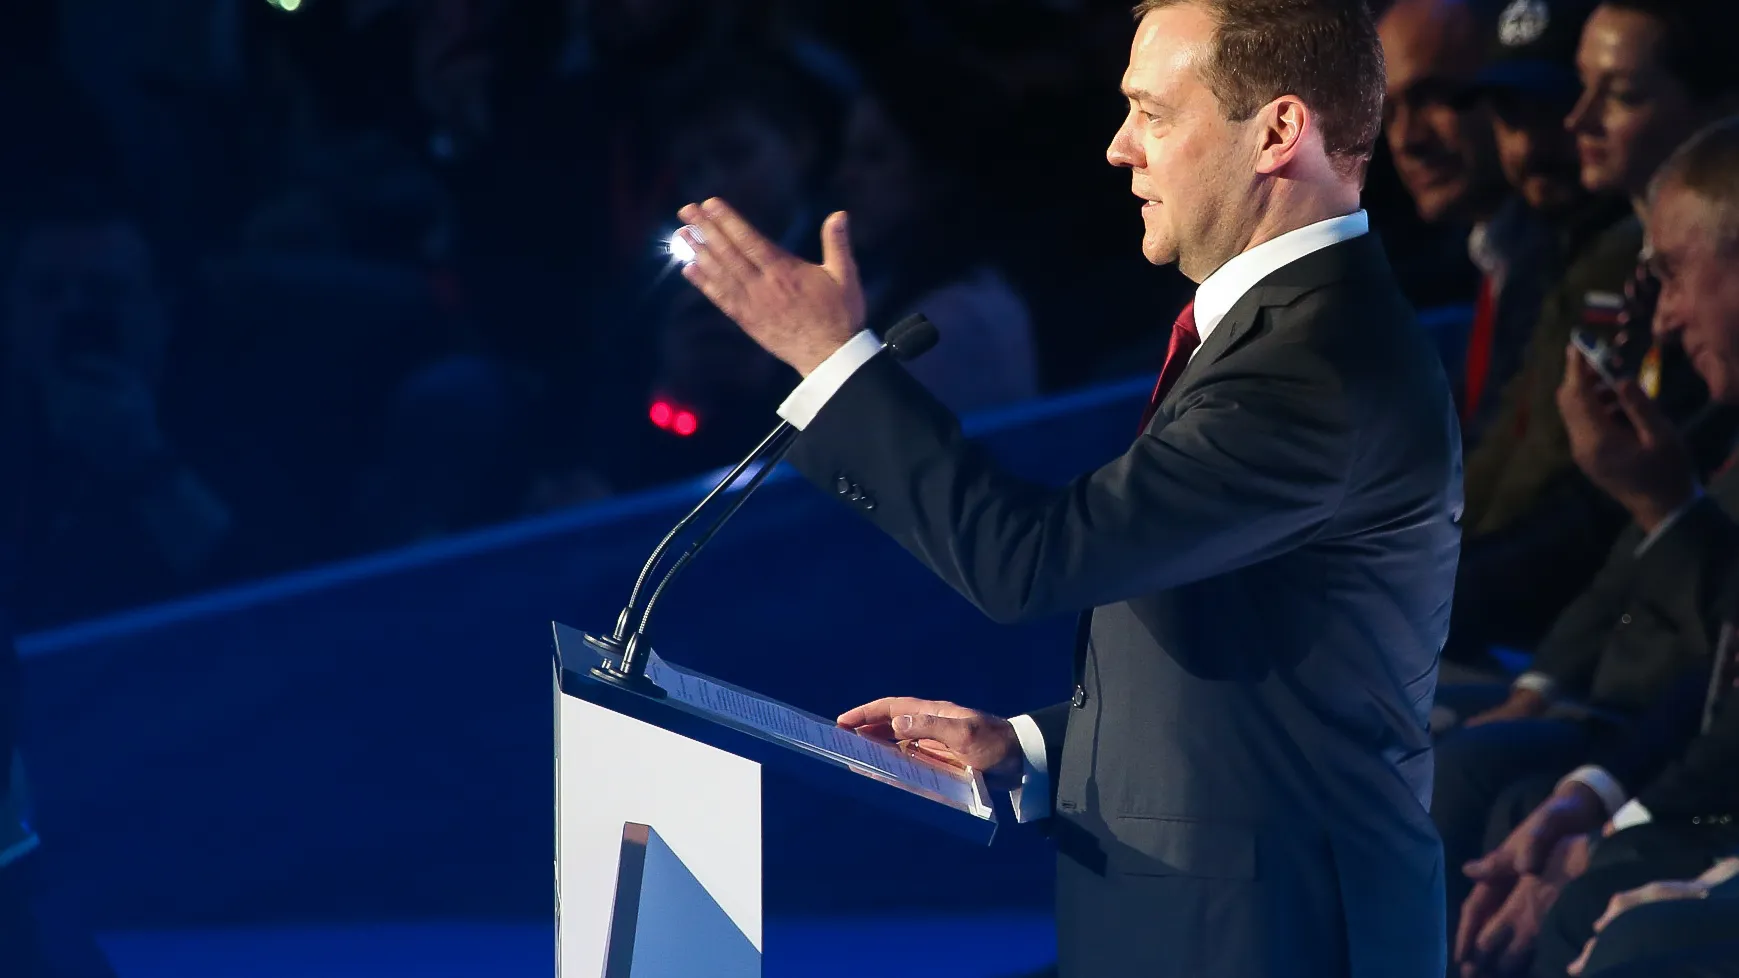 Байдену объяснили значение пожелания ему здоровья от Медведева